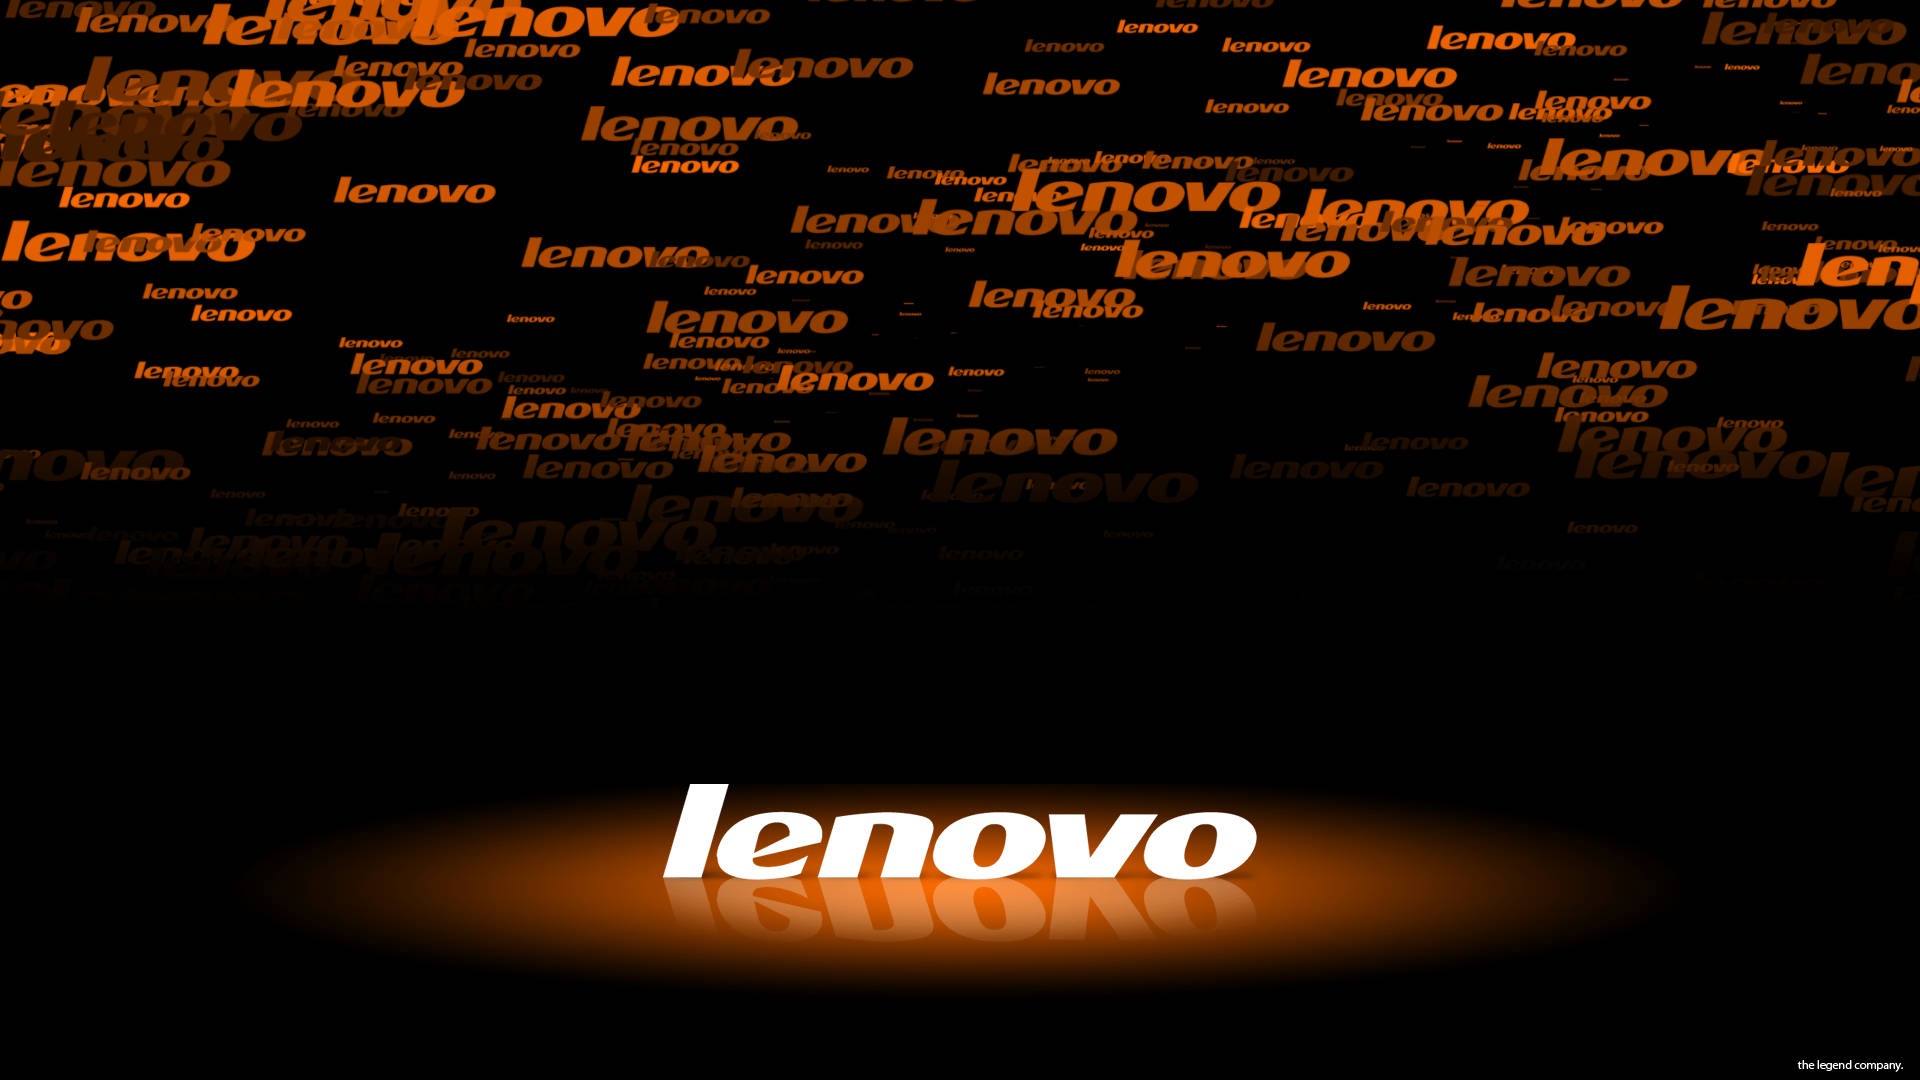 200+] Lenovo Hd Wallpapers | Wallpapers.com